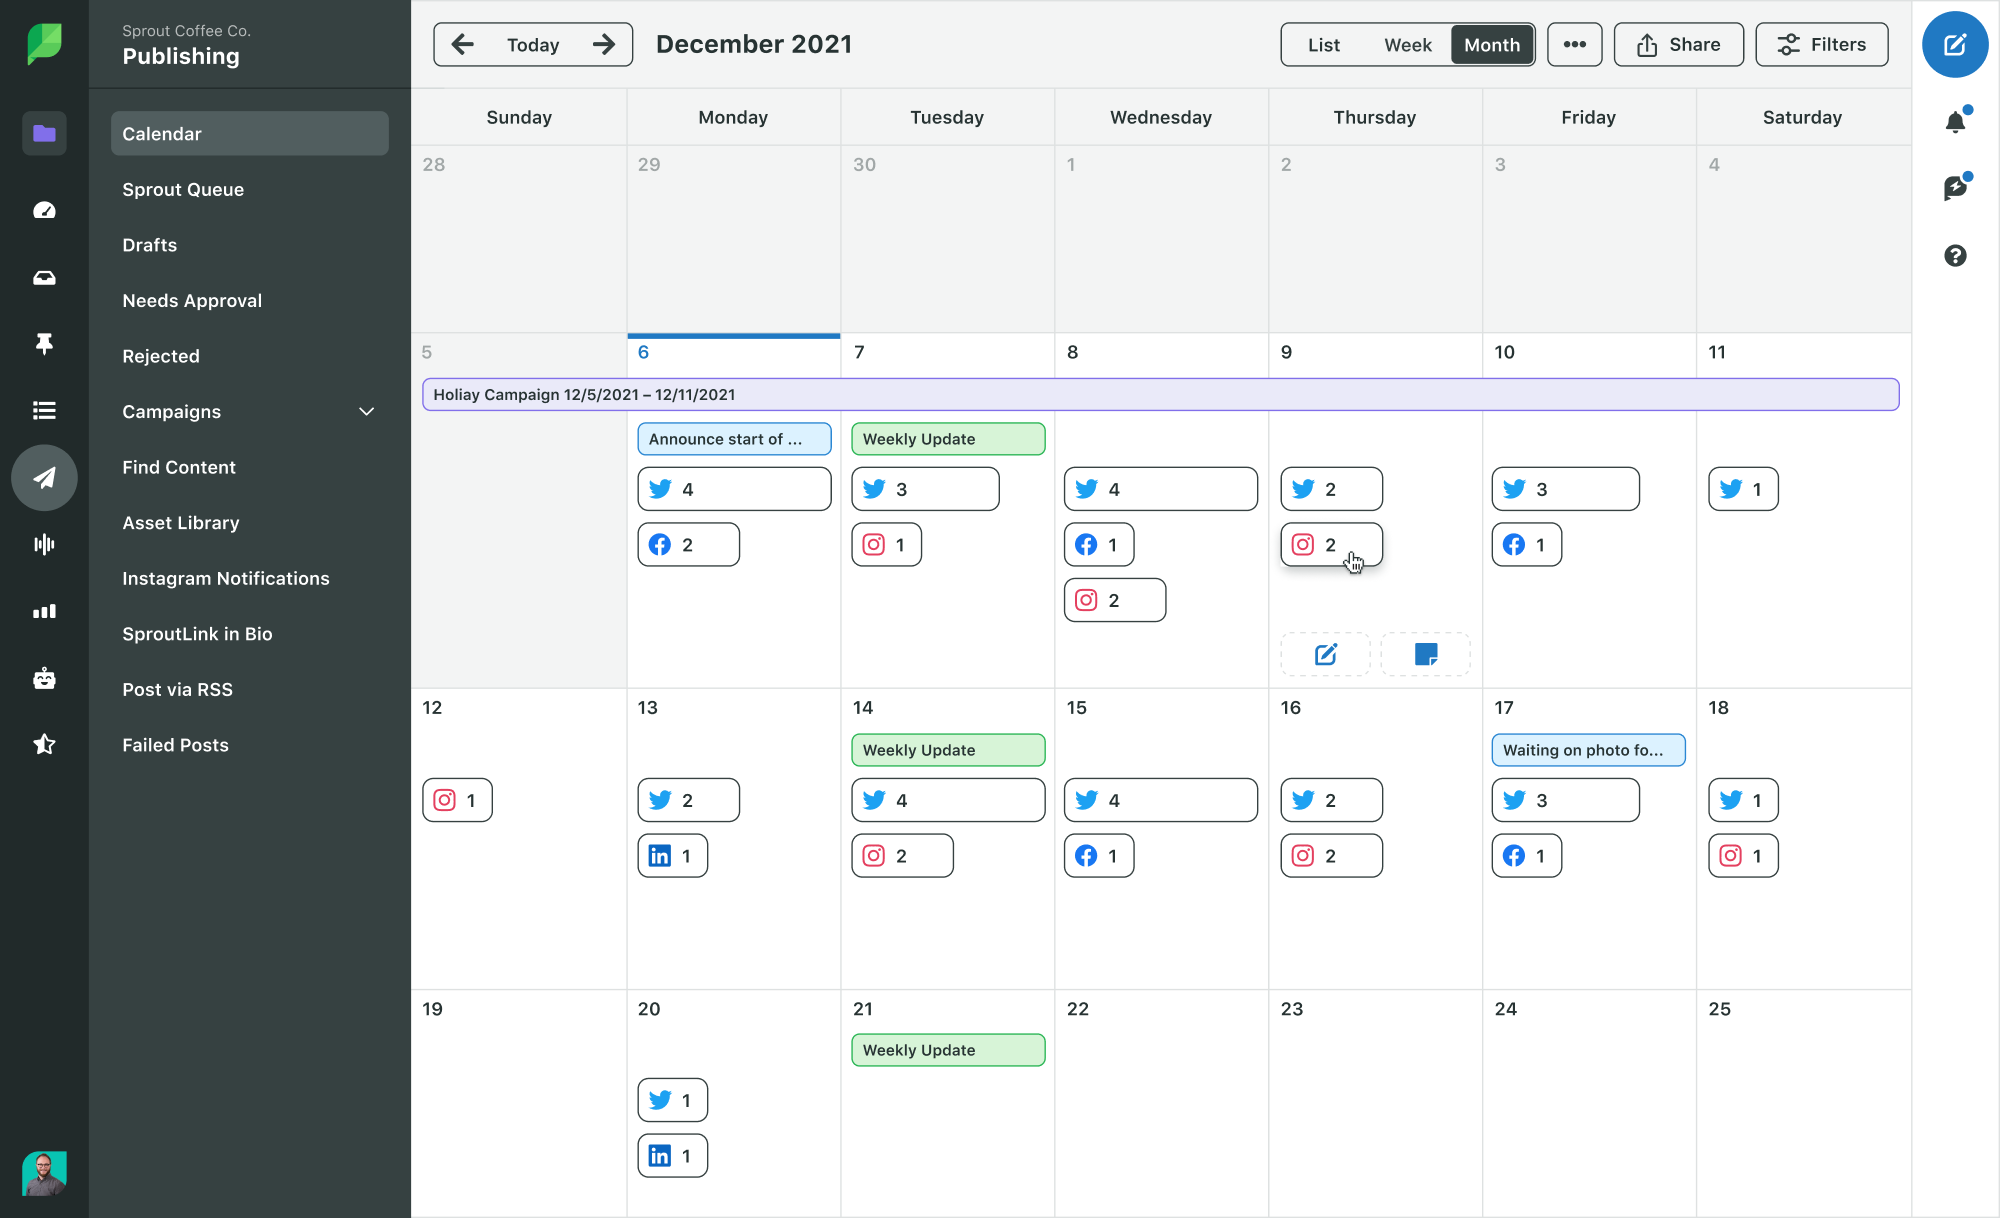 Imagen de producto de Sprout Social de la vista mensual del calendario de publicación